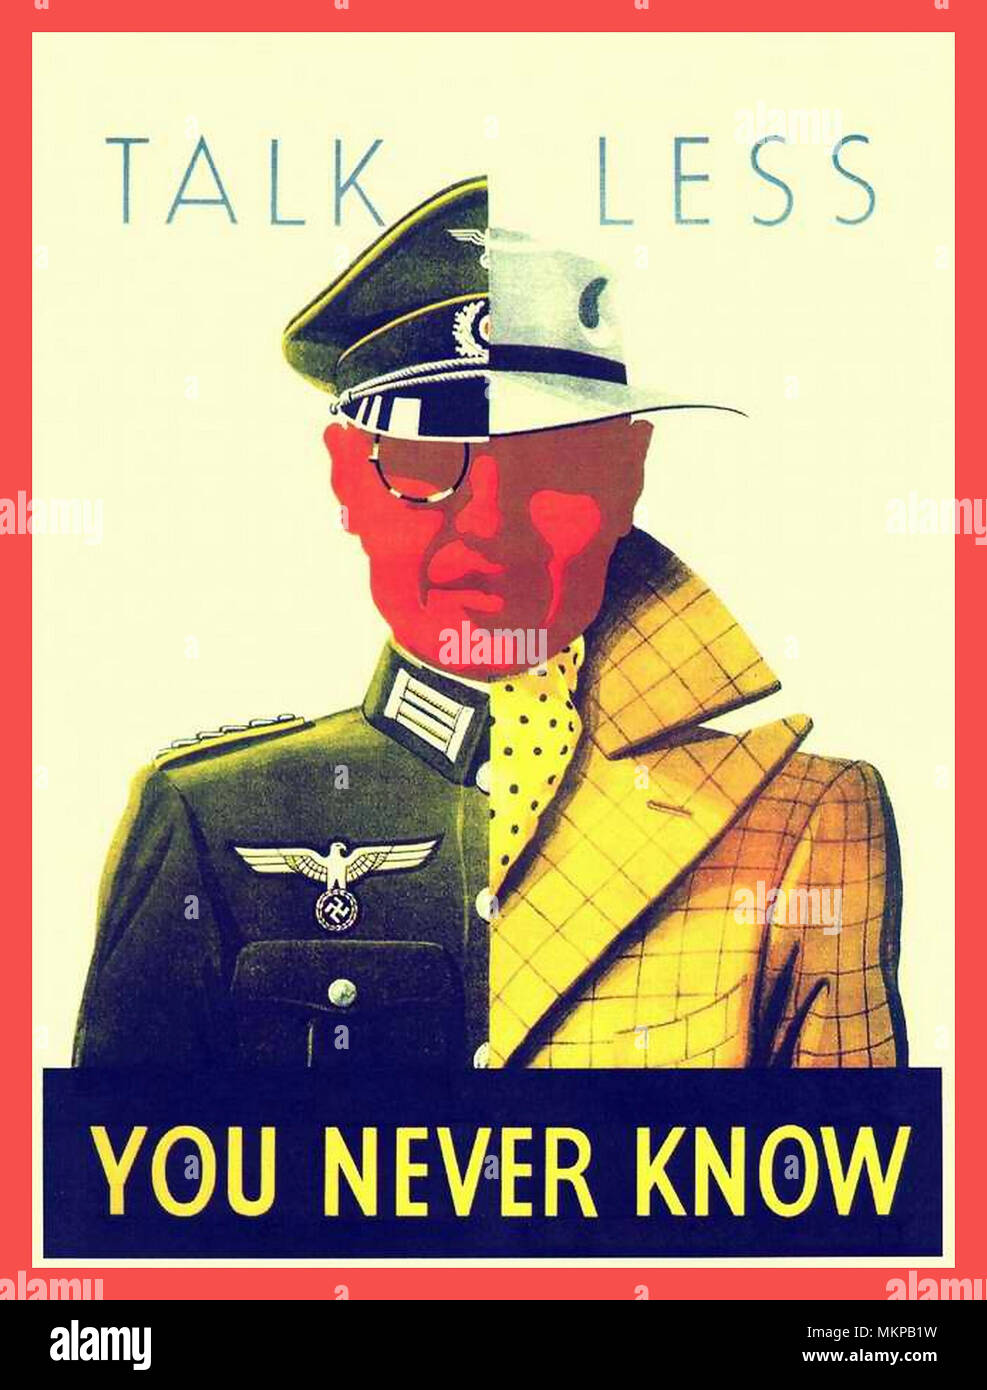 WW2 Vintage Poster UK 1939-45 "parlare meno.... Non si sa mai" Gran Bretagna WW2 Propaganda Poster Vintage con metà uniformata Nazi & metà ben vestito gentleman illustrato Foto Stock